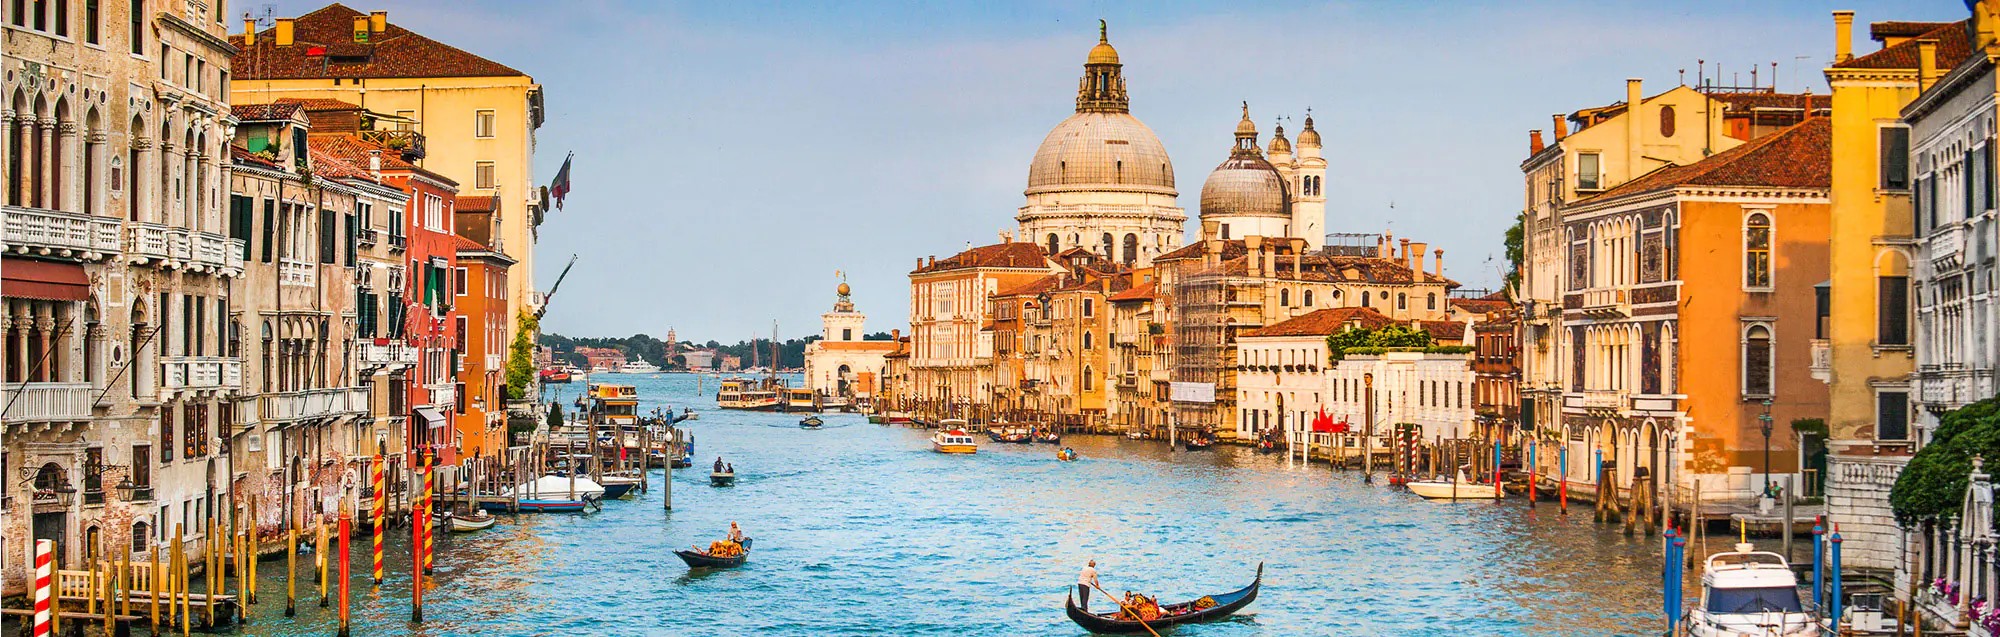 Escuelas de italiano para adultos, niños y adolescentes en Venecia